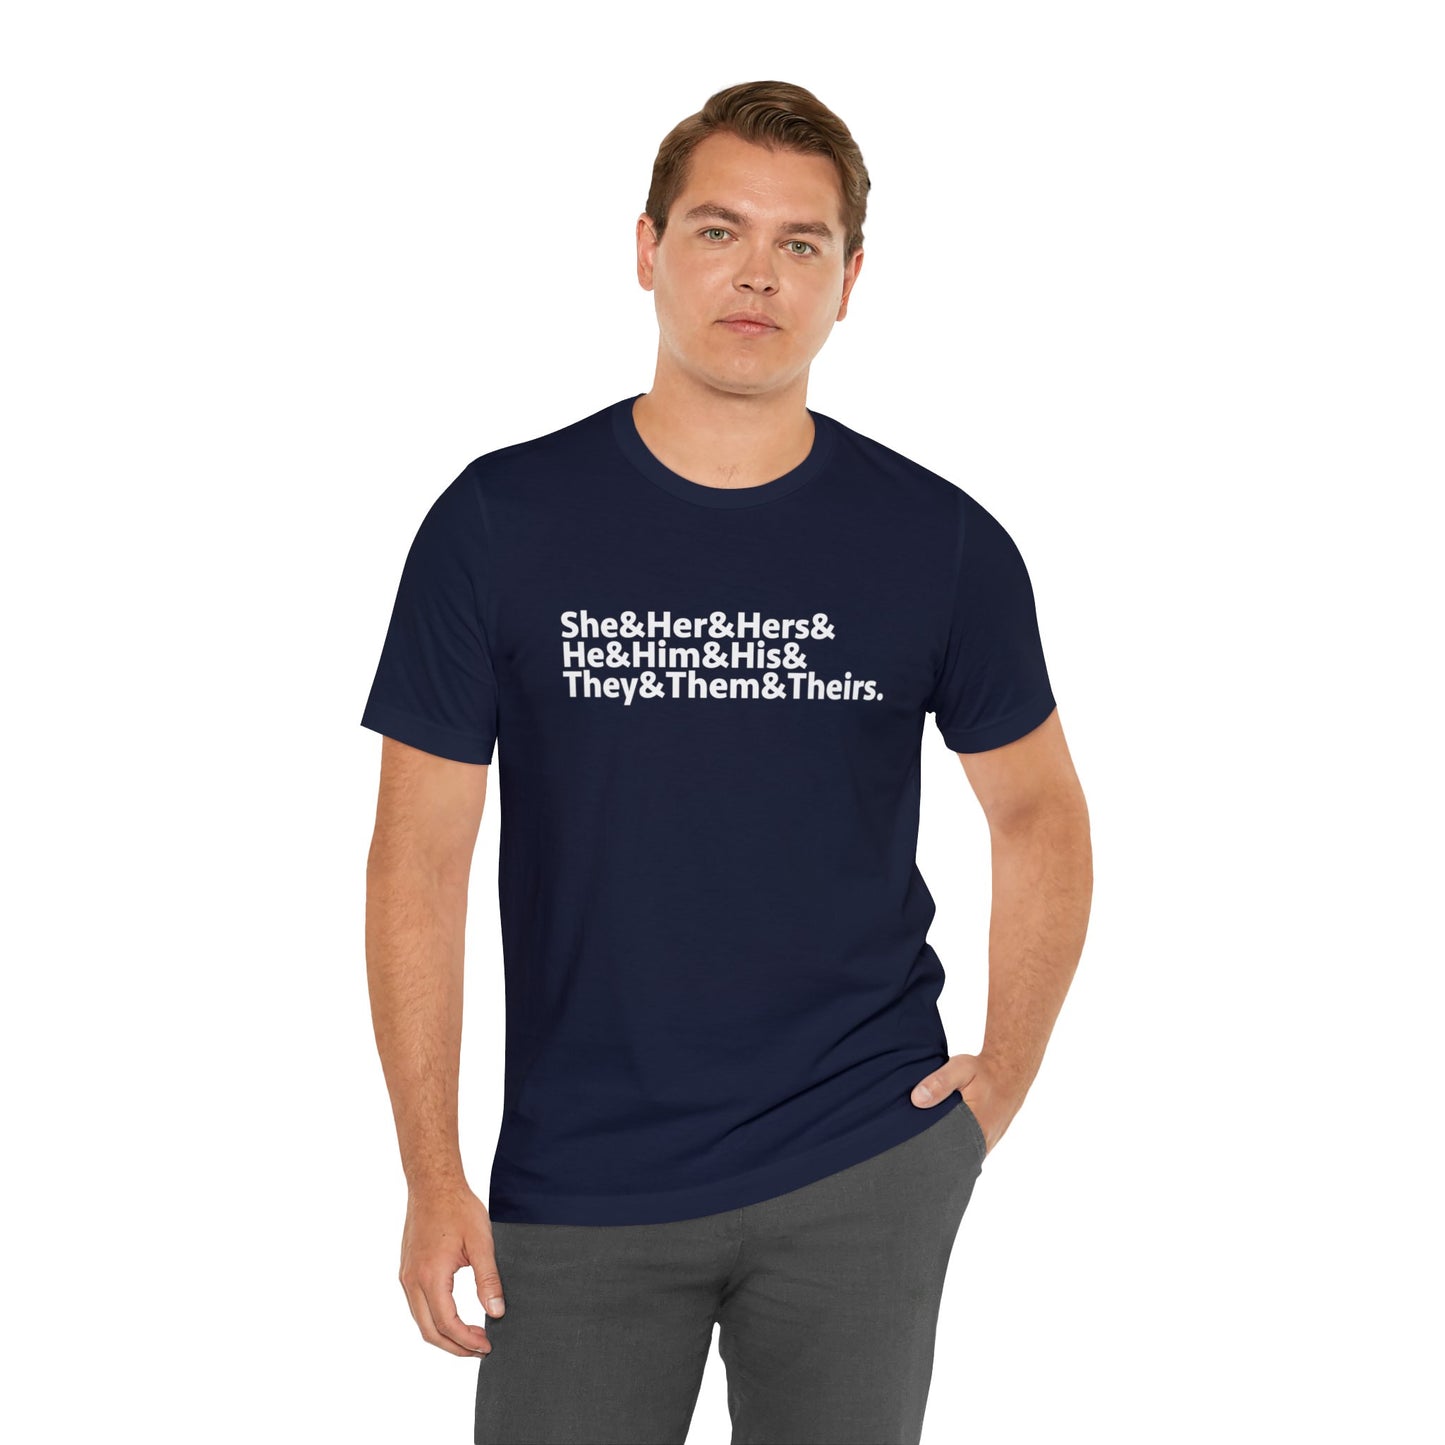 Express Yourself Pronoun T-Shirt